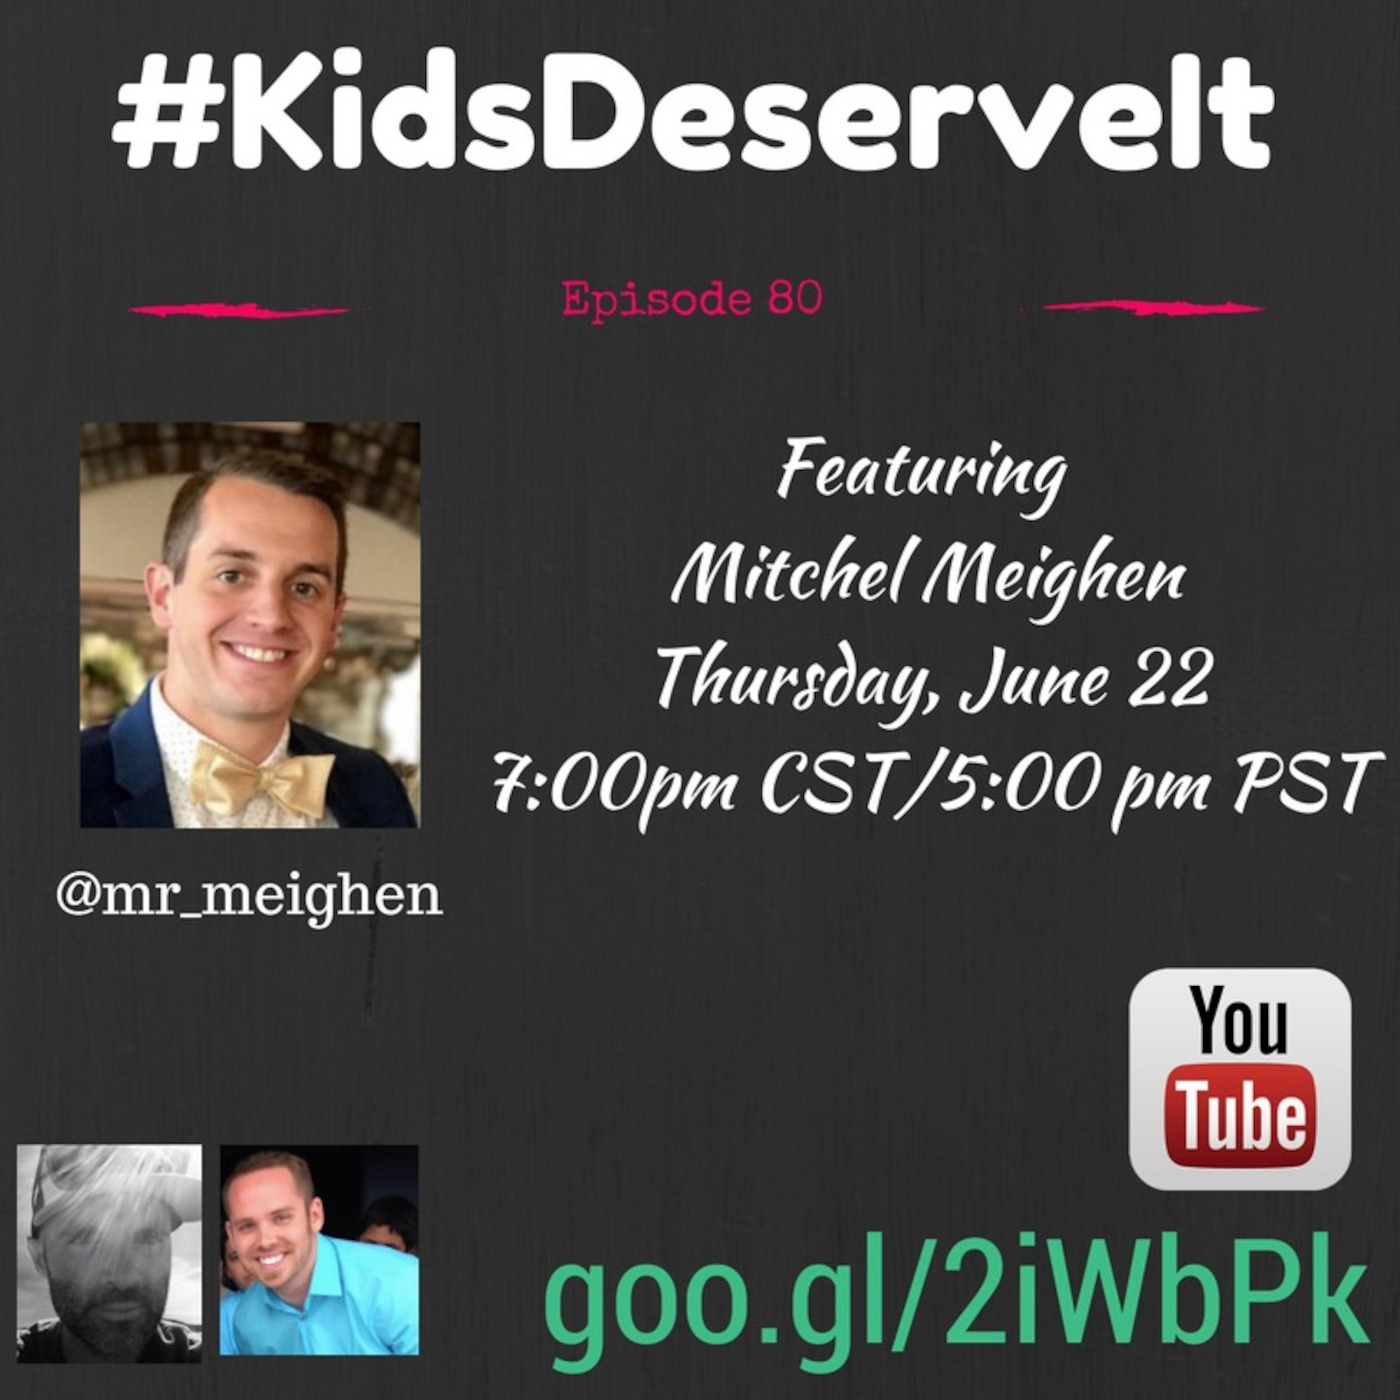 Episode 80 of #KidsDeserveIt with Mitchel Meighen